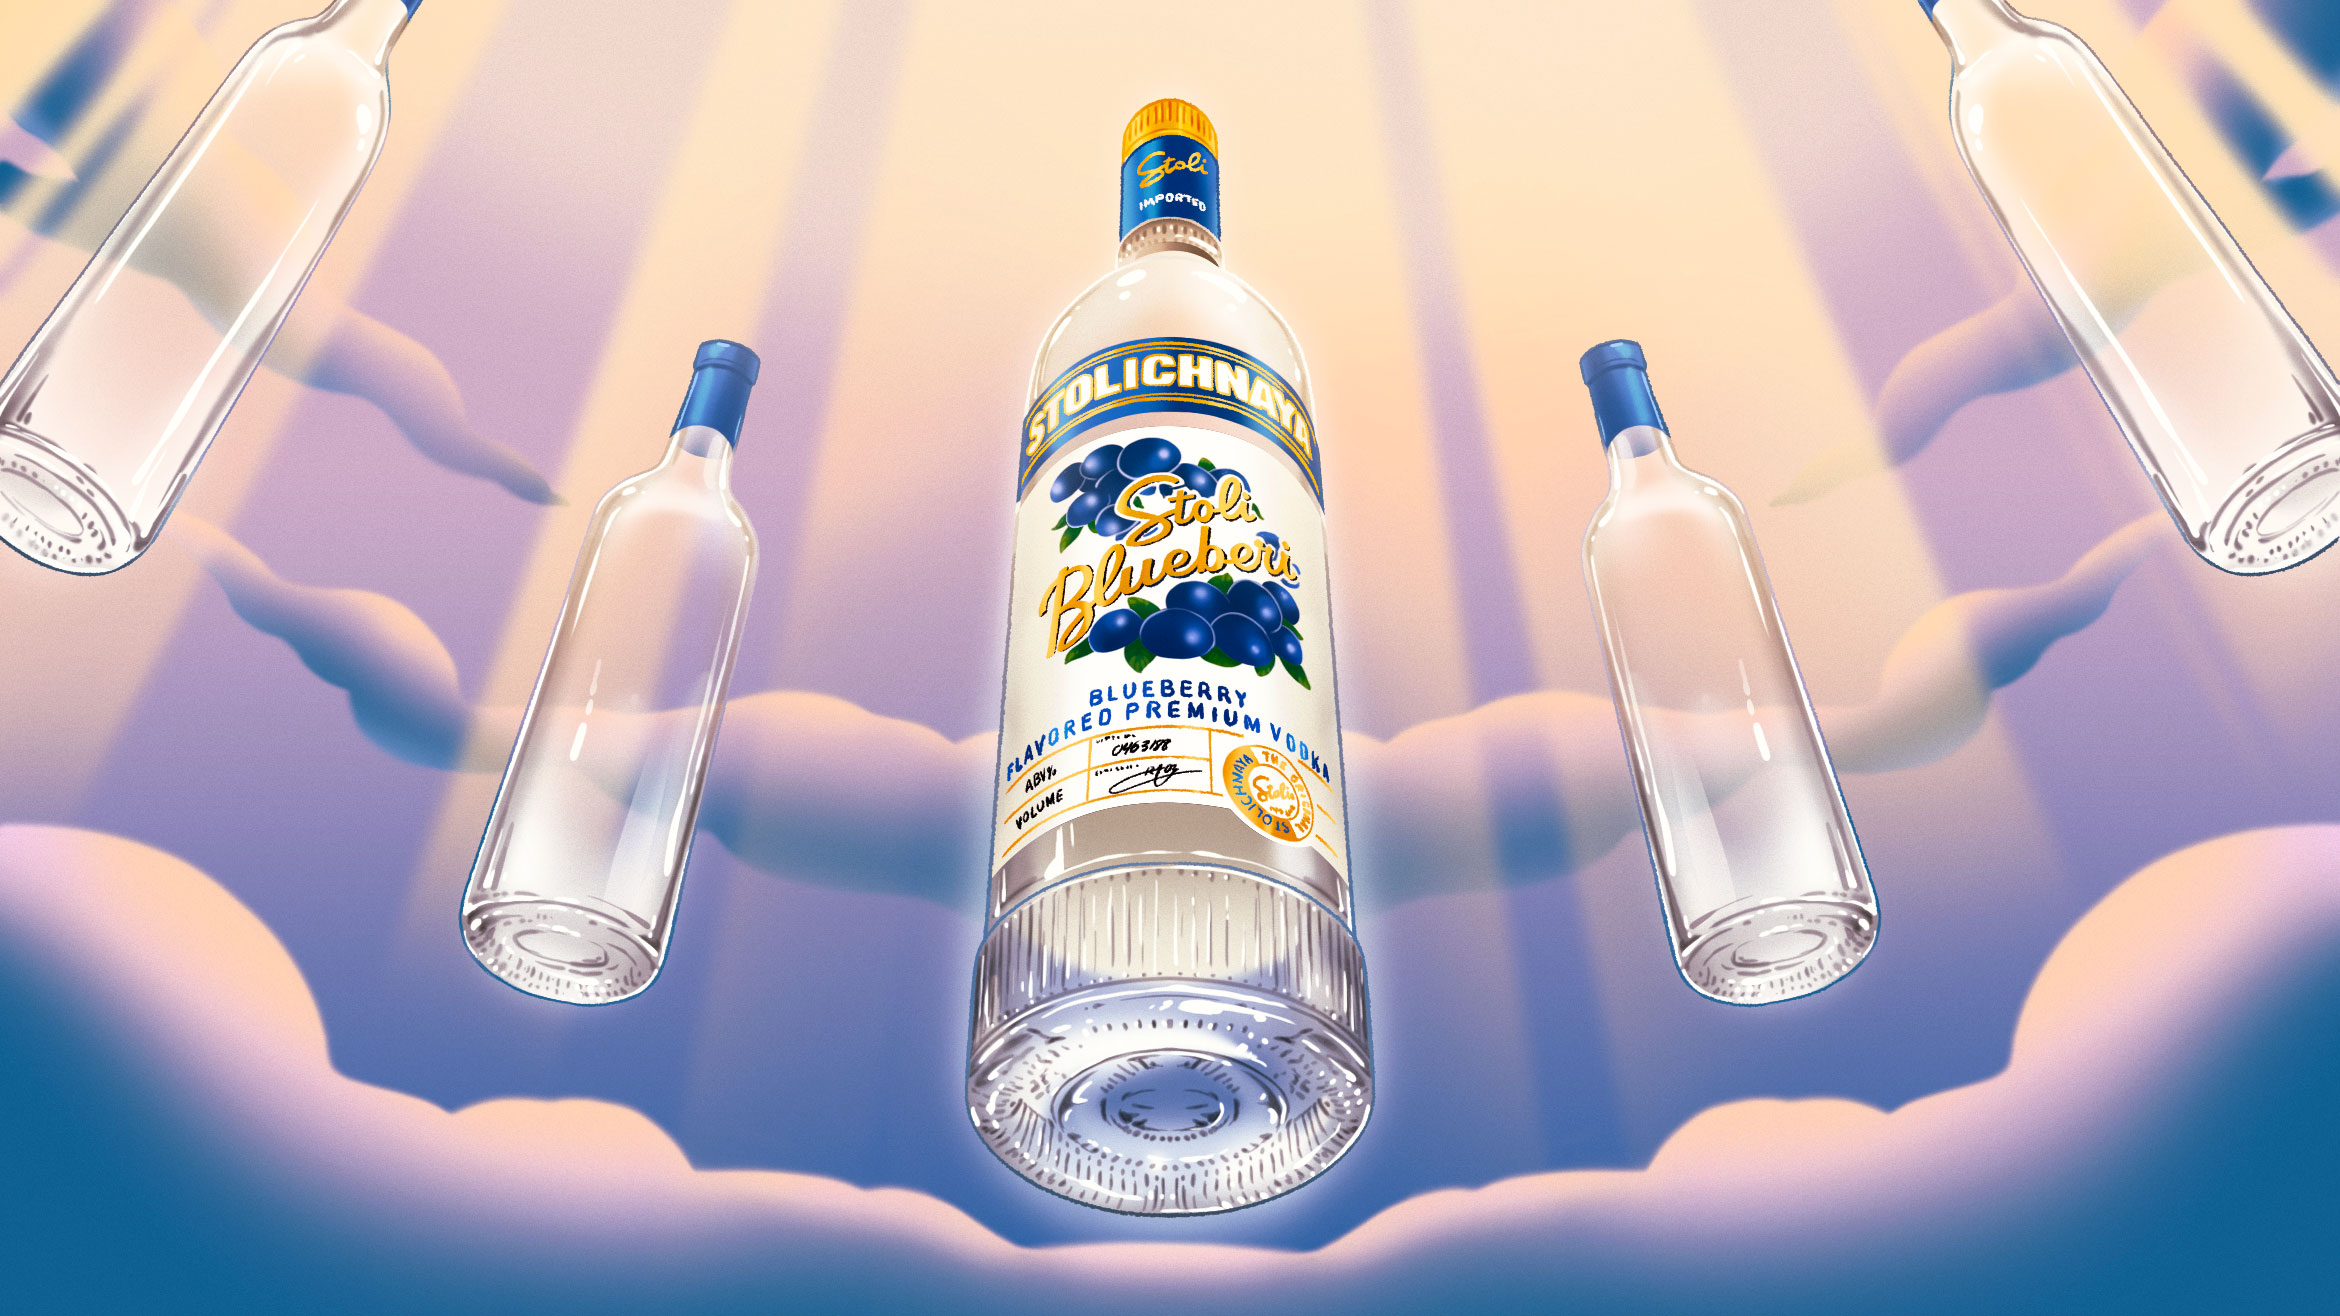 A bottle of Stoli Blueberry Vodka ascending into the heavens. 